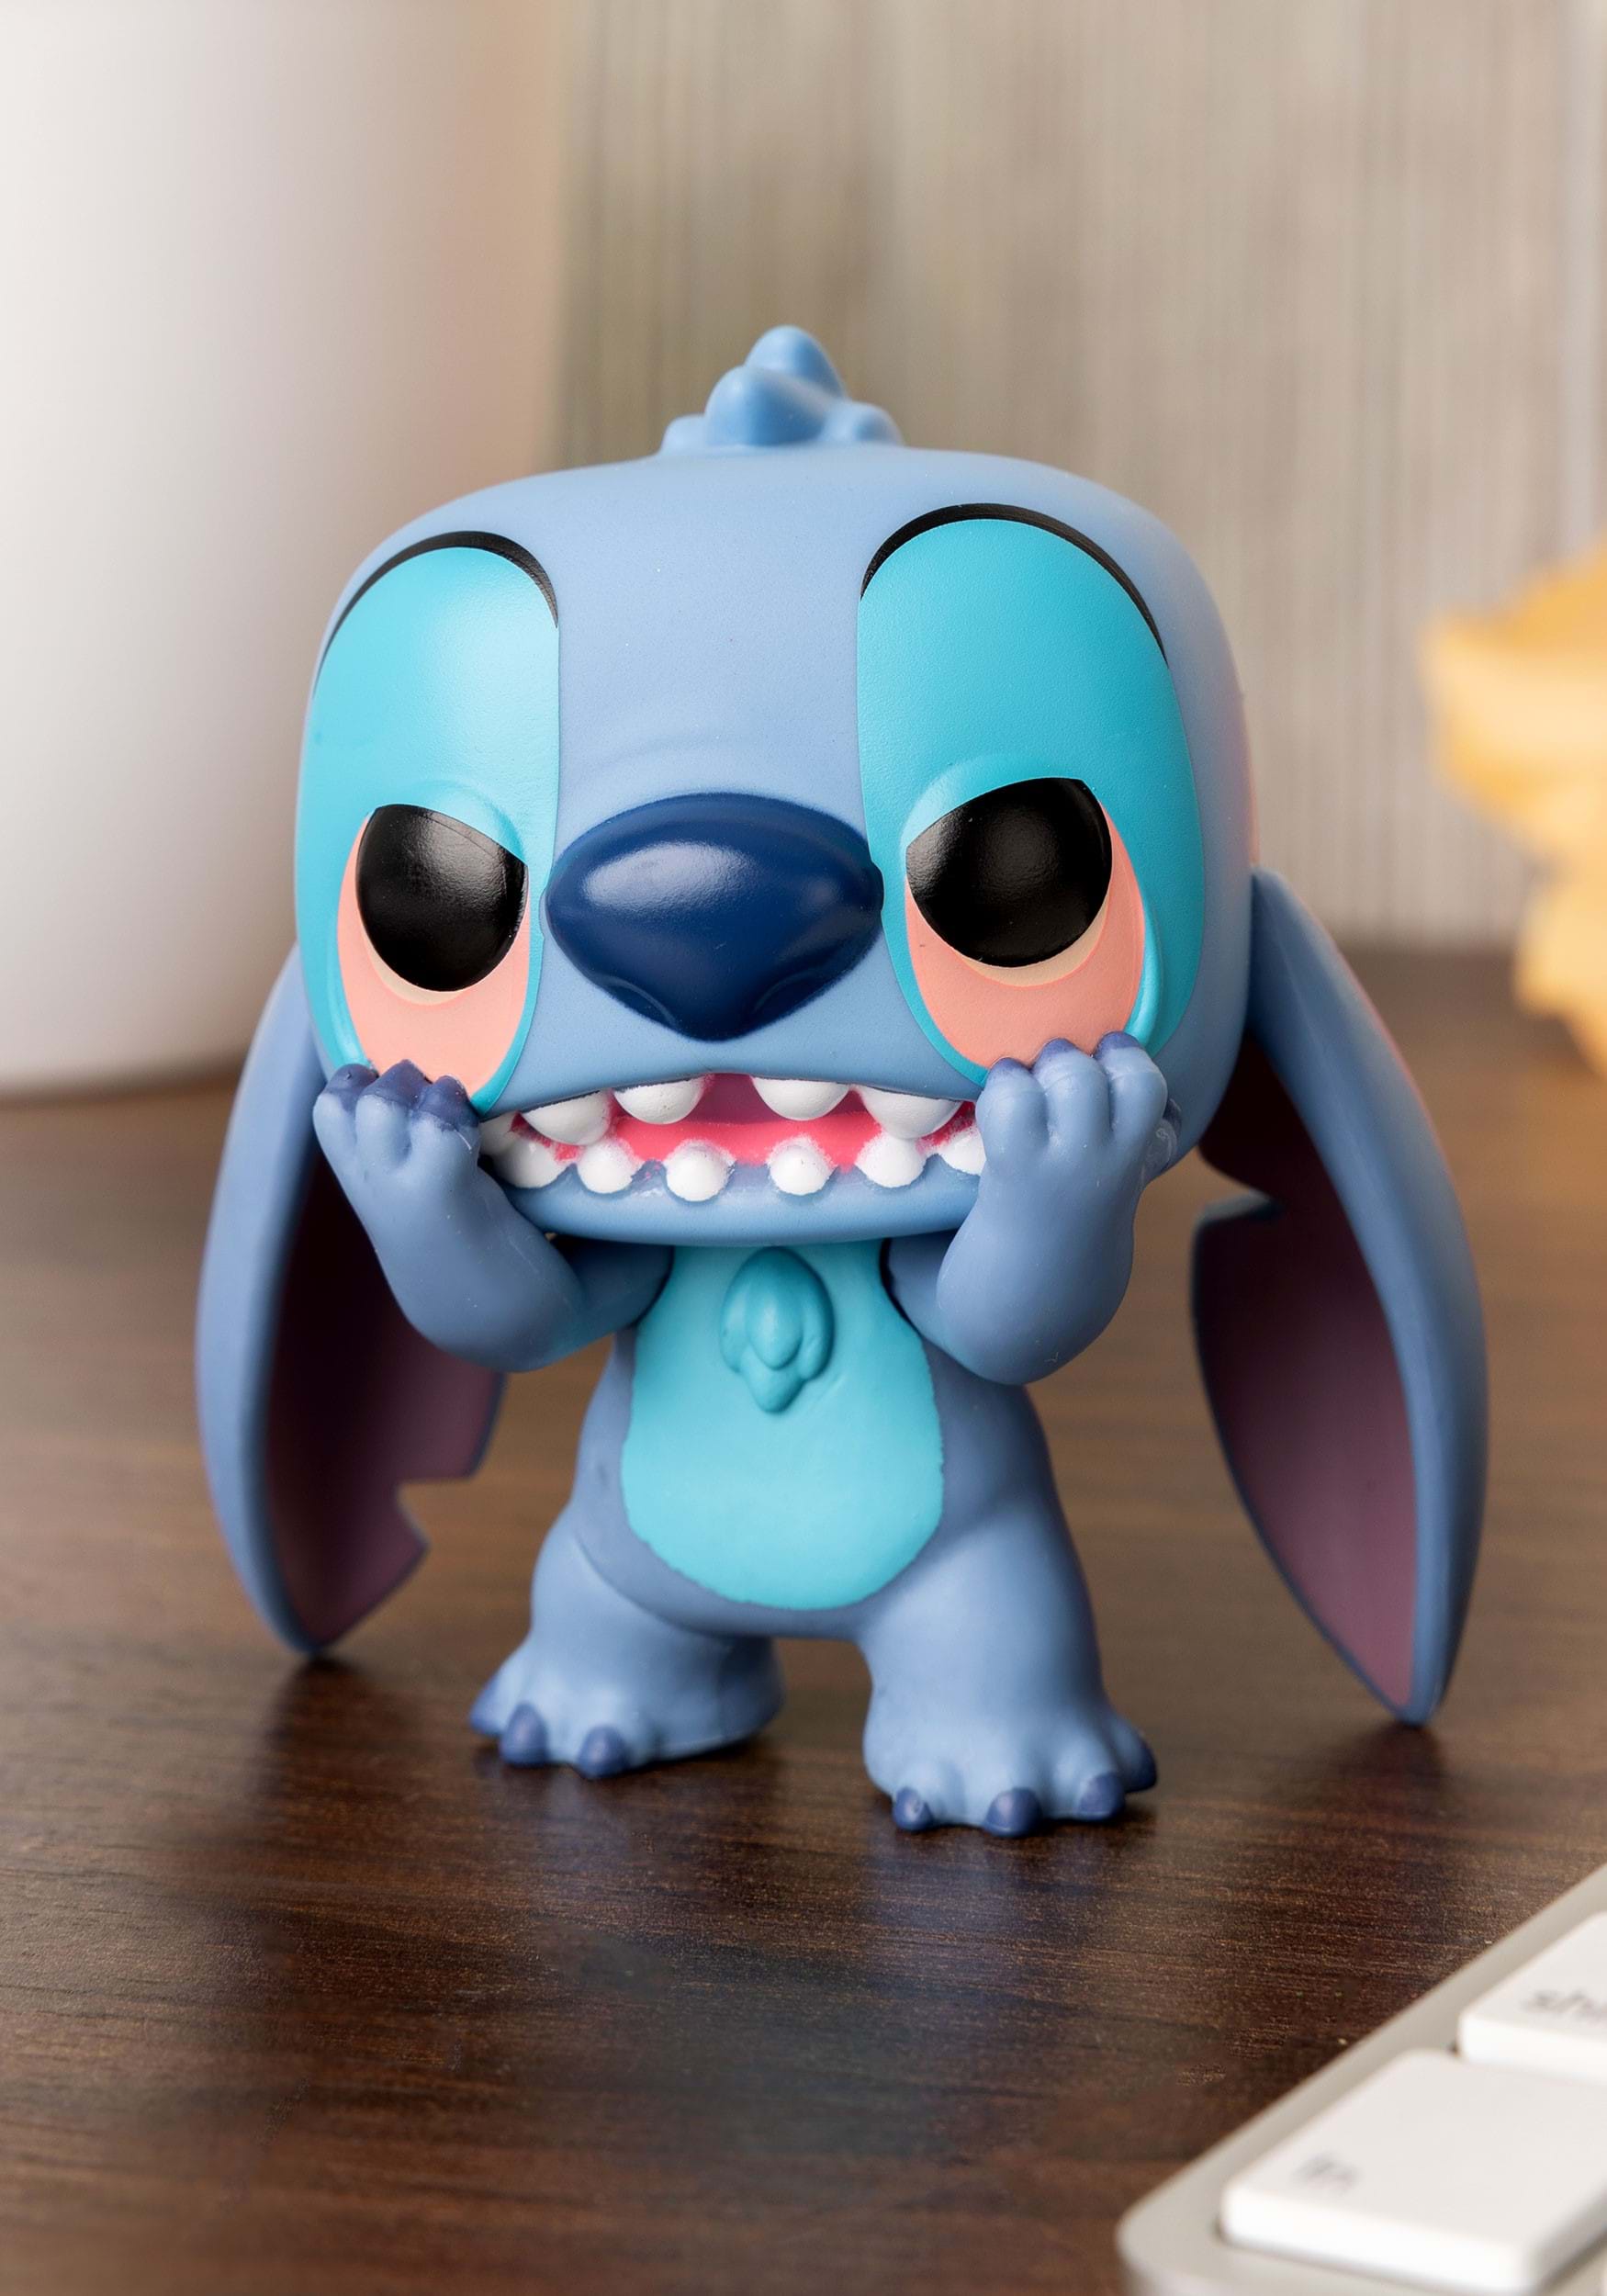 4 figurines Lilo et Stitch Disney d'occasion - Par .